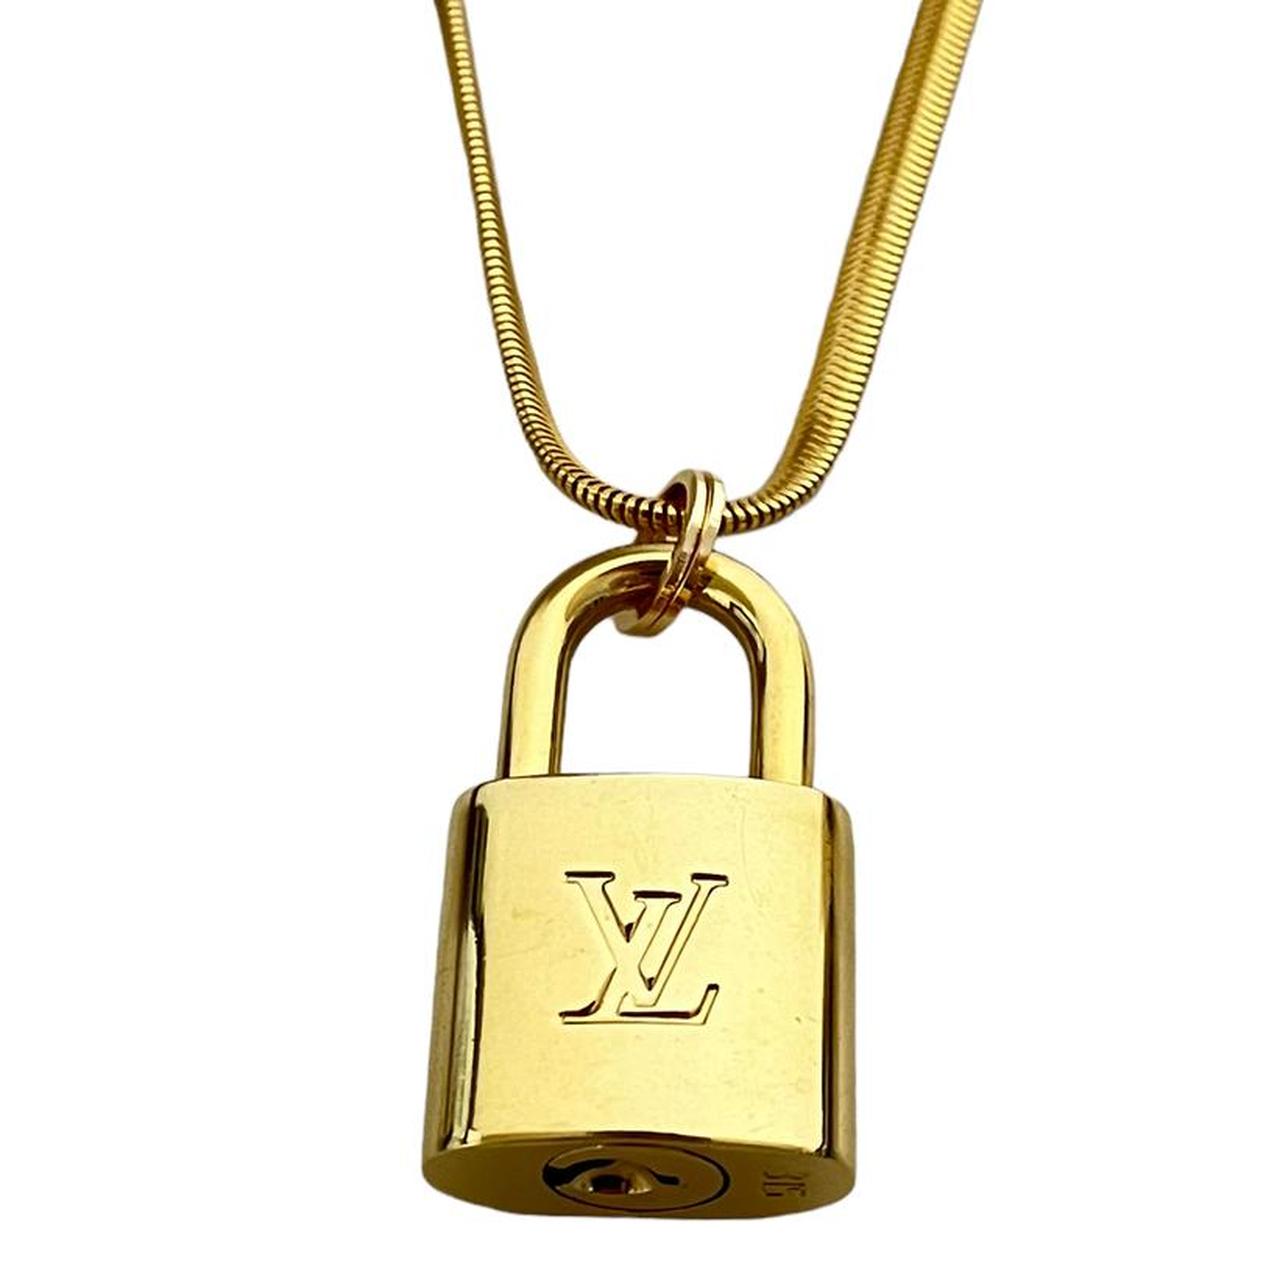 VINTAGE LOUIS VUITTON LOCK Authentic Louis Vuitton - Depop